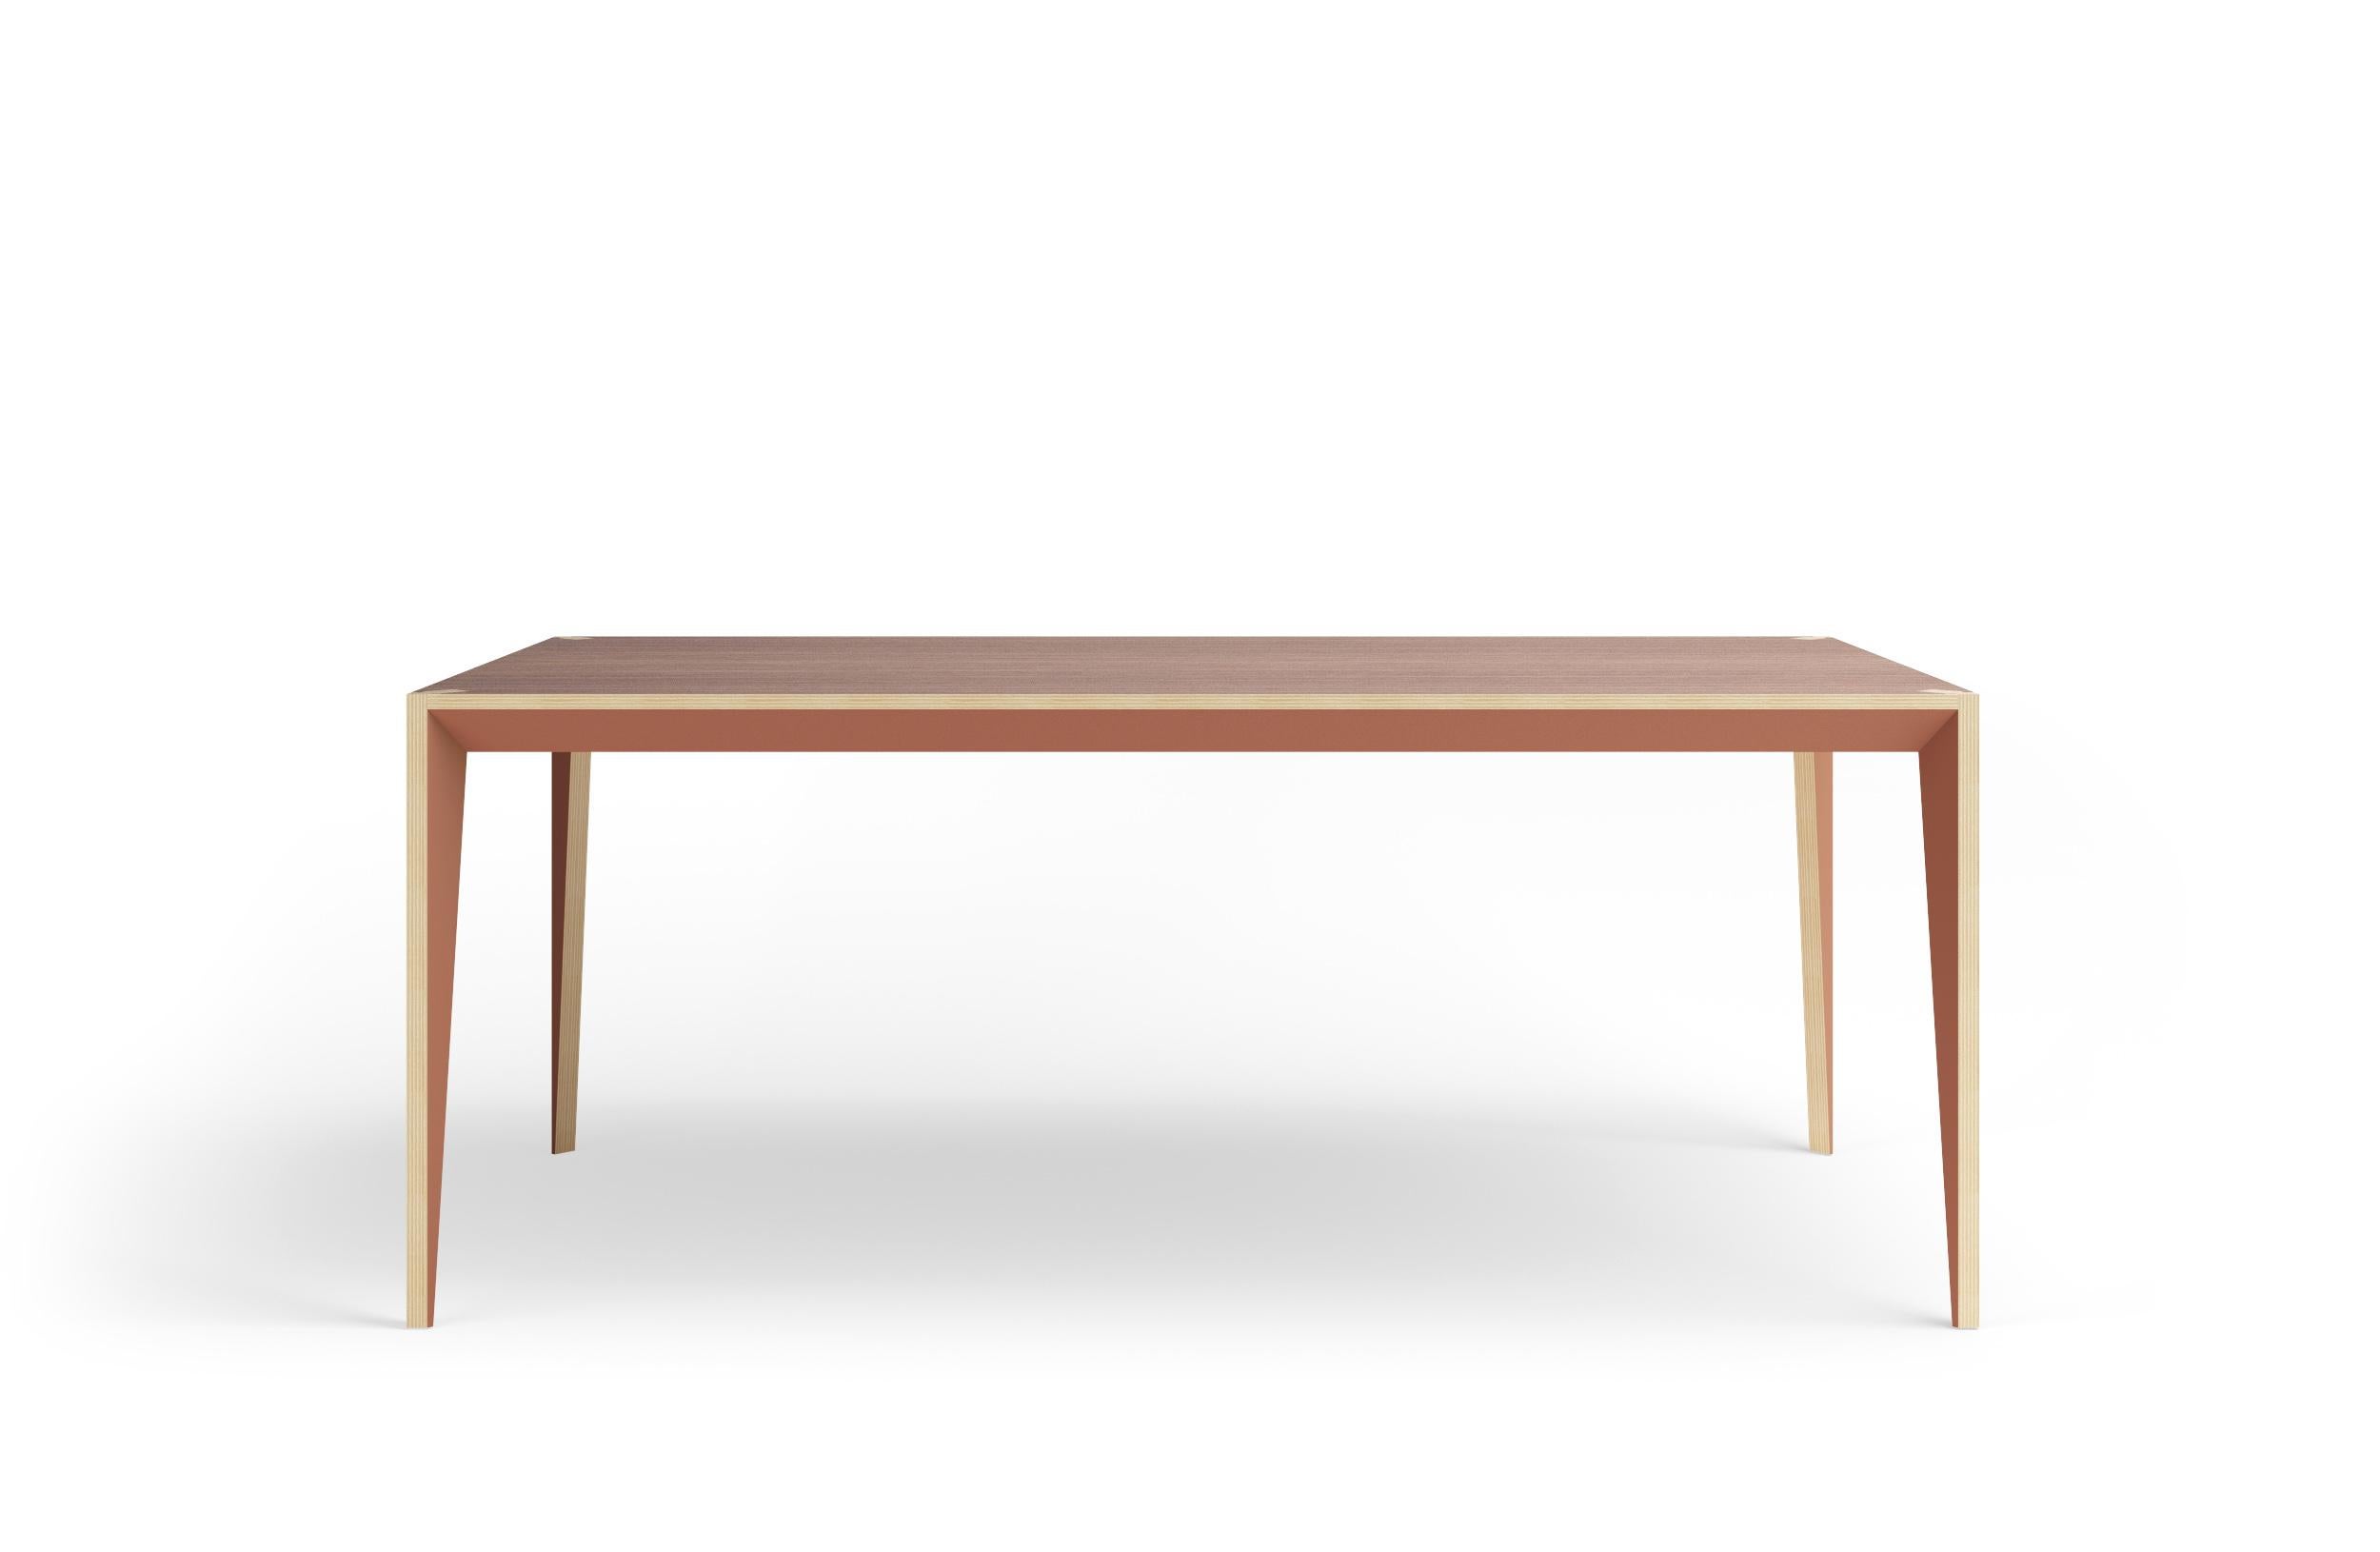 Erleben Sie die Harmonie von Design und Funktionalität mit dem MiMi Dining Table, einem NYCxDesign 2018 Honoree und German Design Award 2019 Nominee. Die facettierte Geometrie und die lackierten Oberflächen sind ein Blickfang in jedem Ess- oder